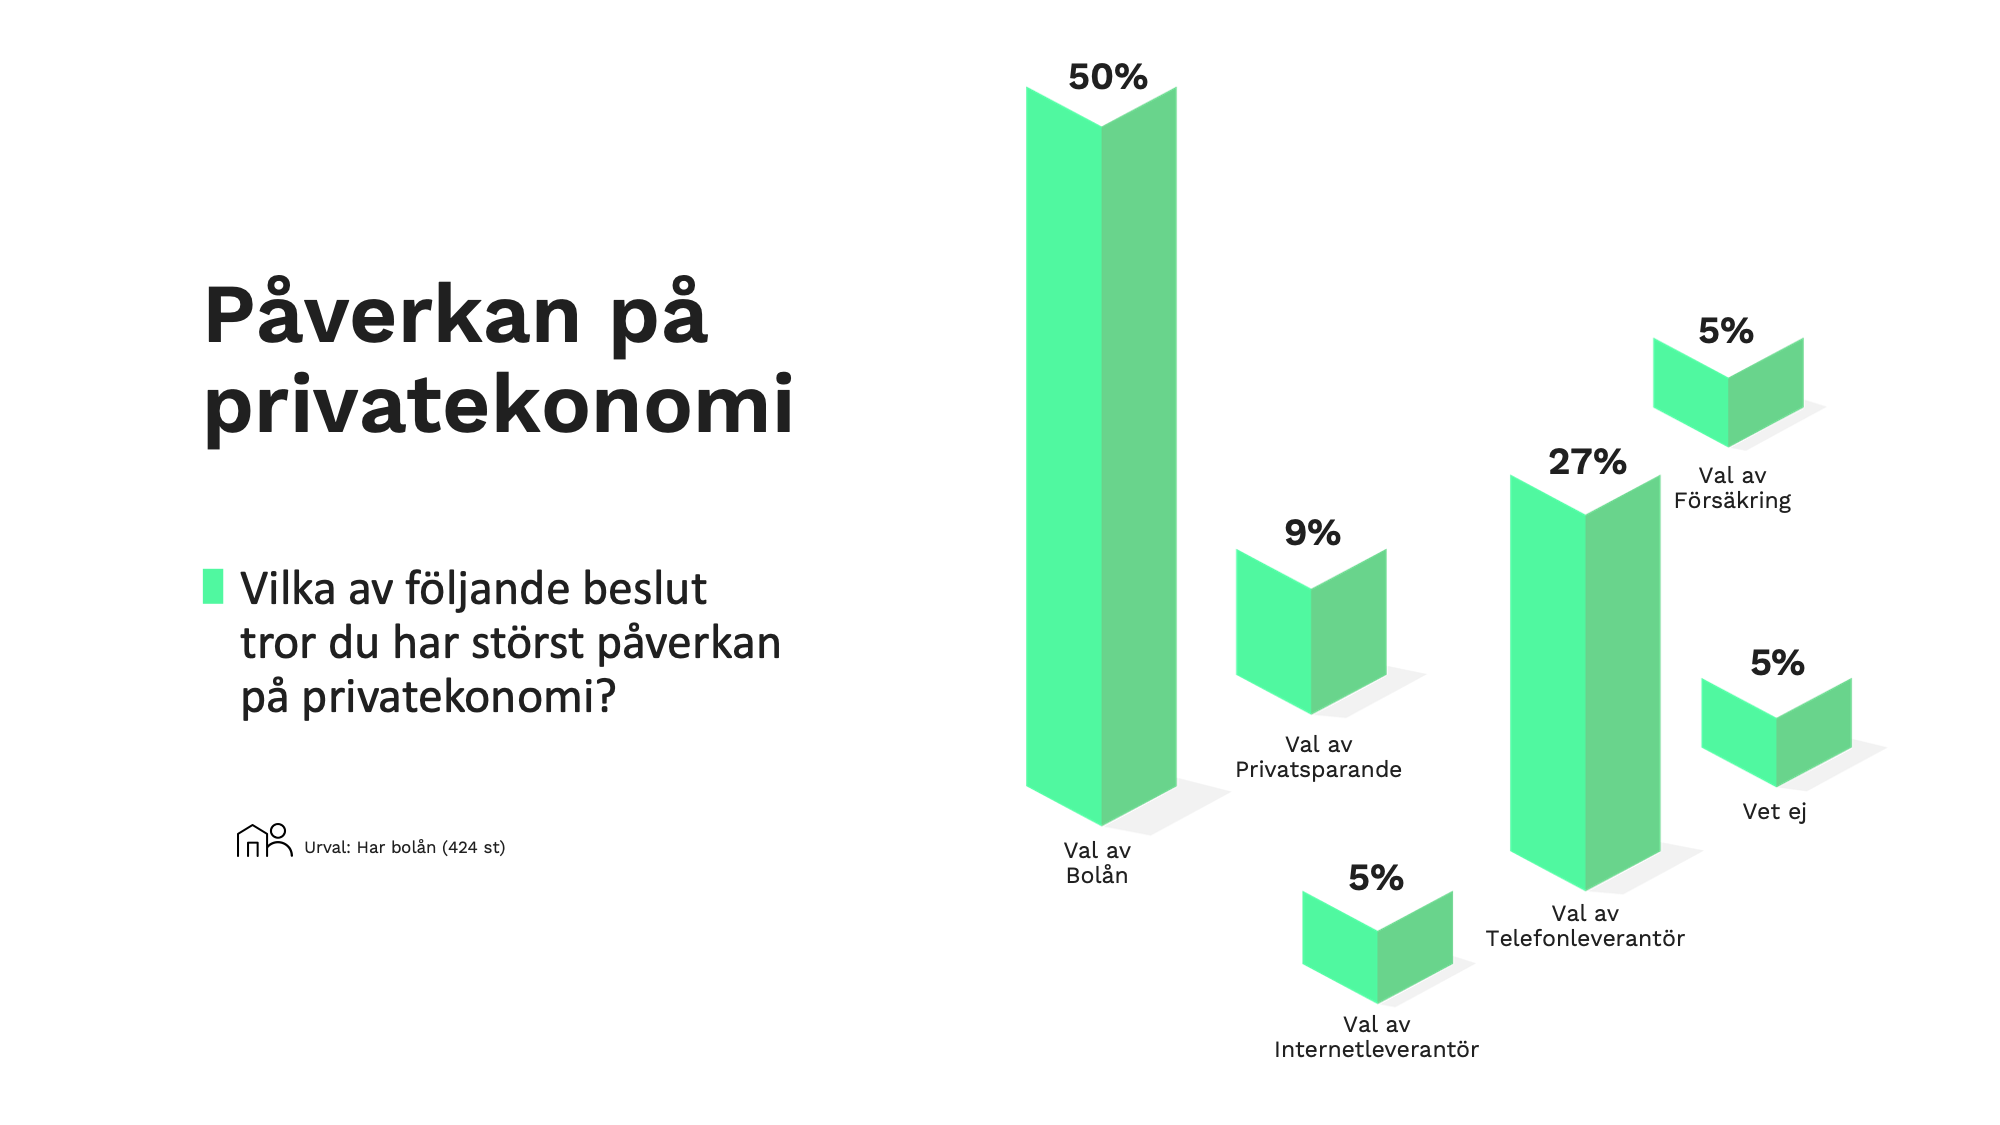 En tabell som visar vad svenska folket tror om påverkan på privatekonomi. Fråga 2:  Vilka av följande beslut tror du har störst påverkan på privatekonomi?